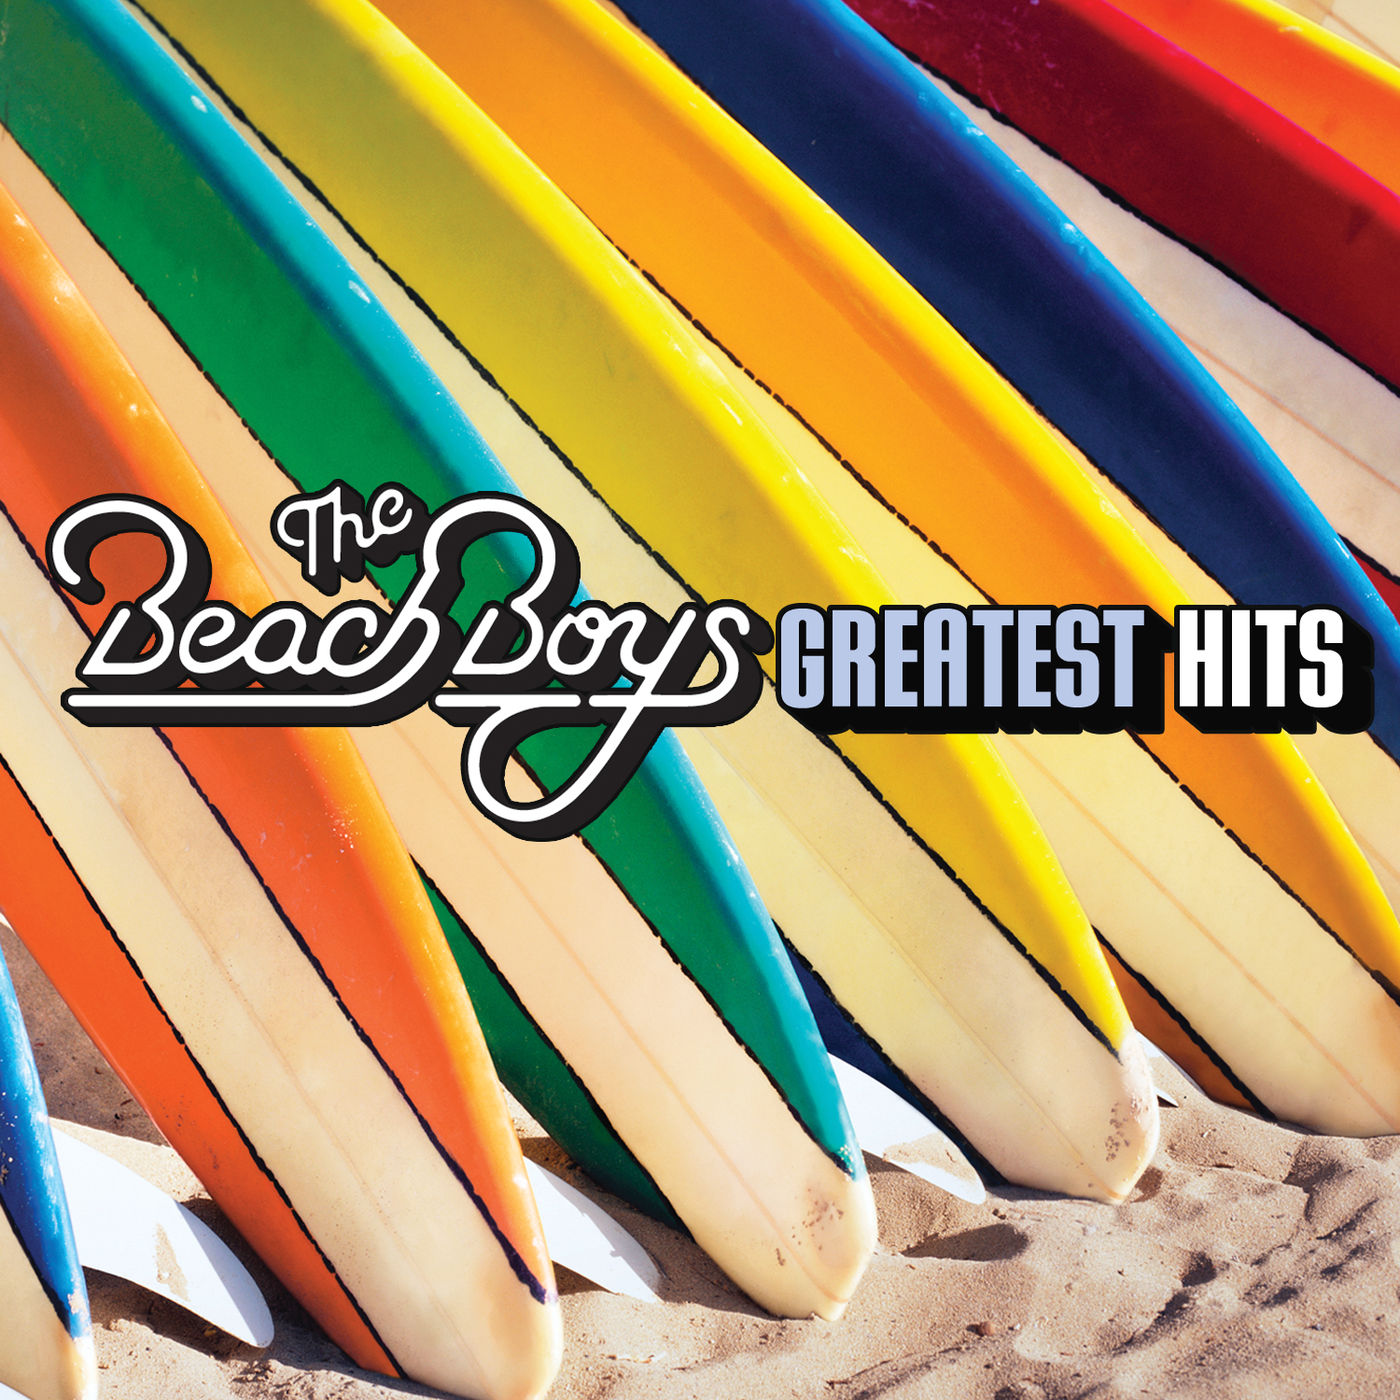 The Beach Boys – Greatest Hits【44.1kHz／16bit】意大利区-OppsUpro音乐帝国